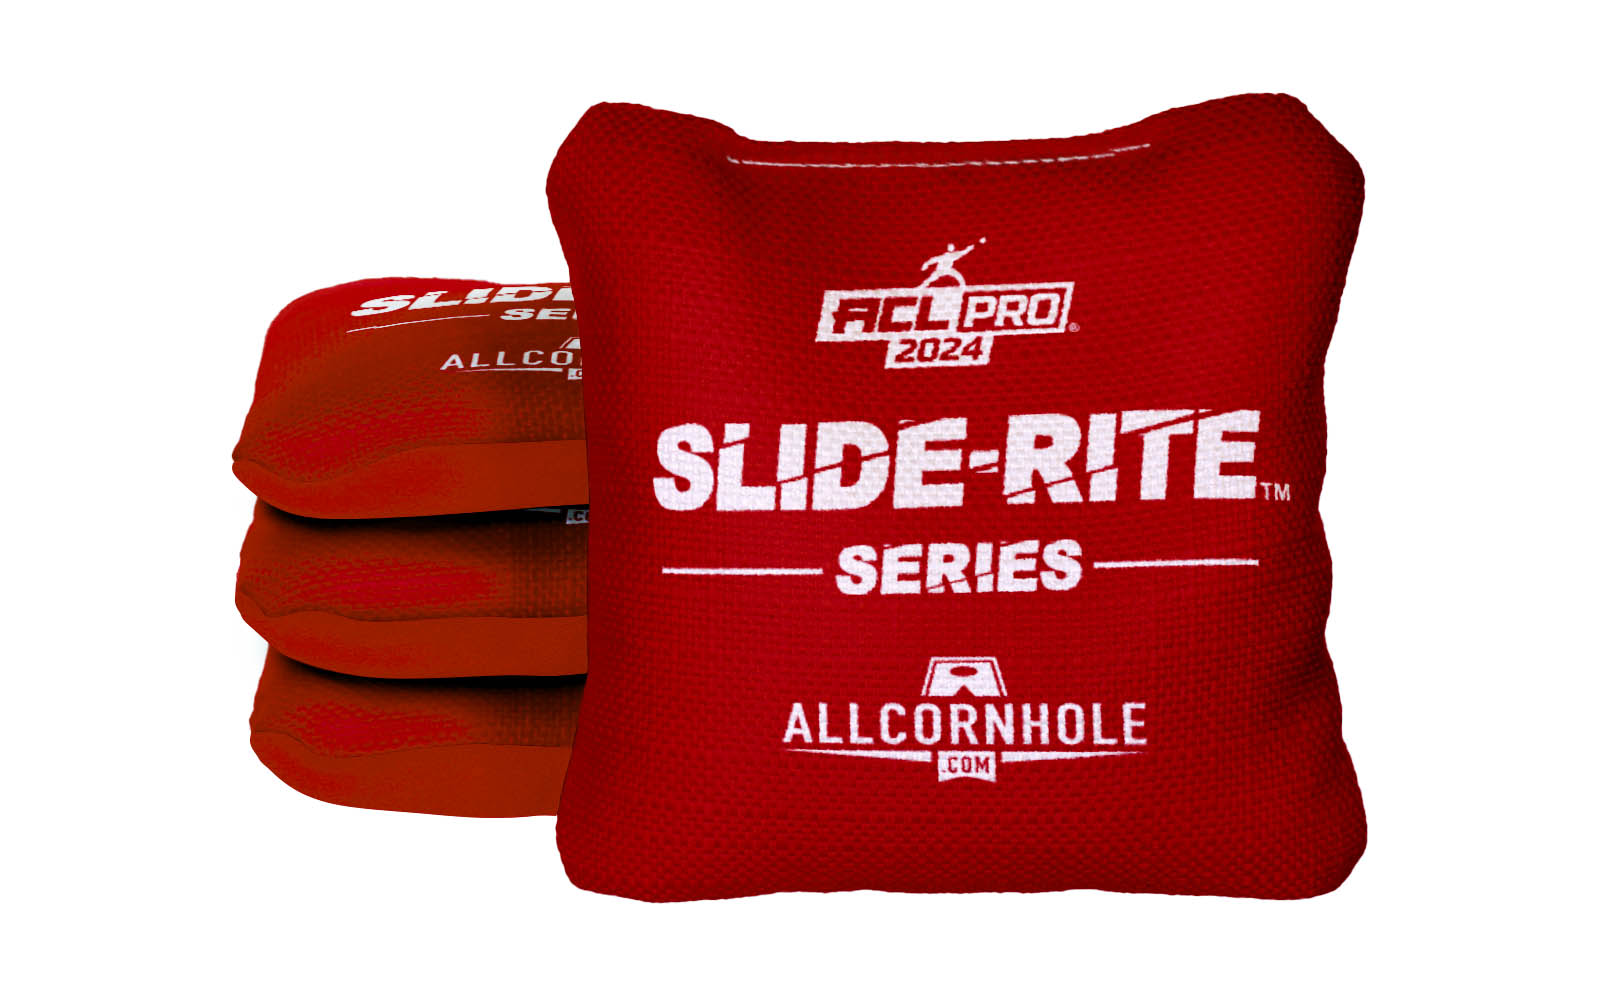 Officially Licensed Collegiate Cornhole Bags - AllCornhole Slide Rite - Set of 4 - University of Utah